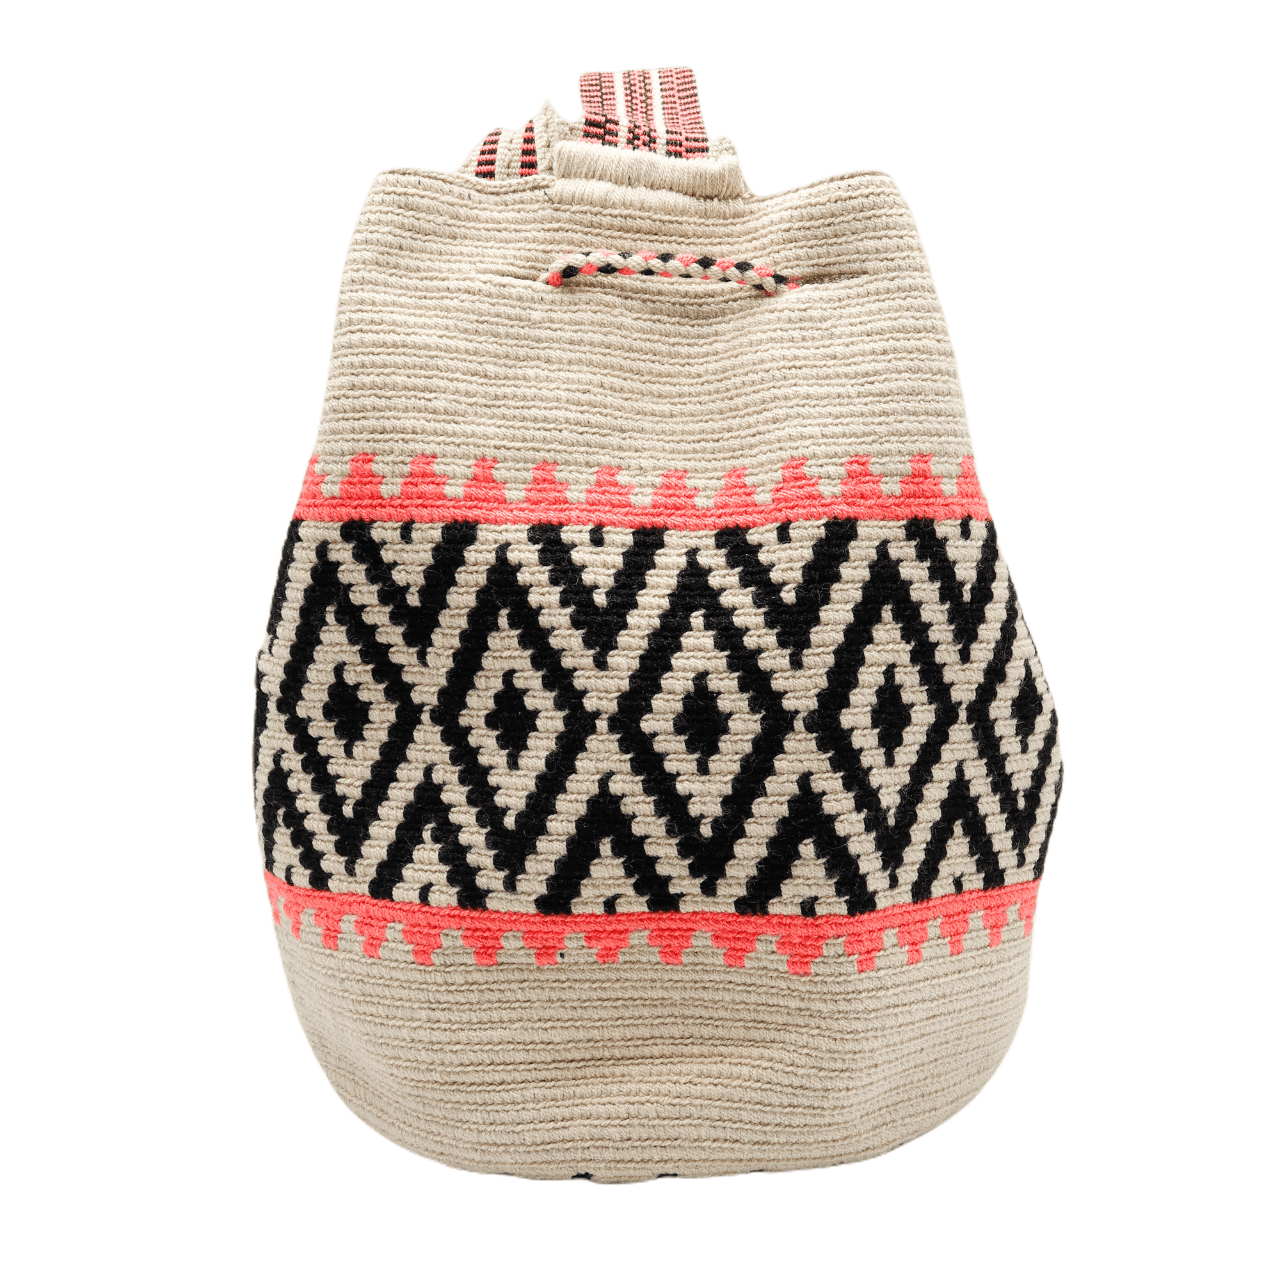 Handmade Gaby Wayuu Bag in Beige, Black, and Pink Shades